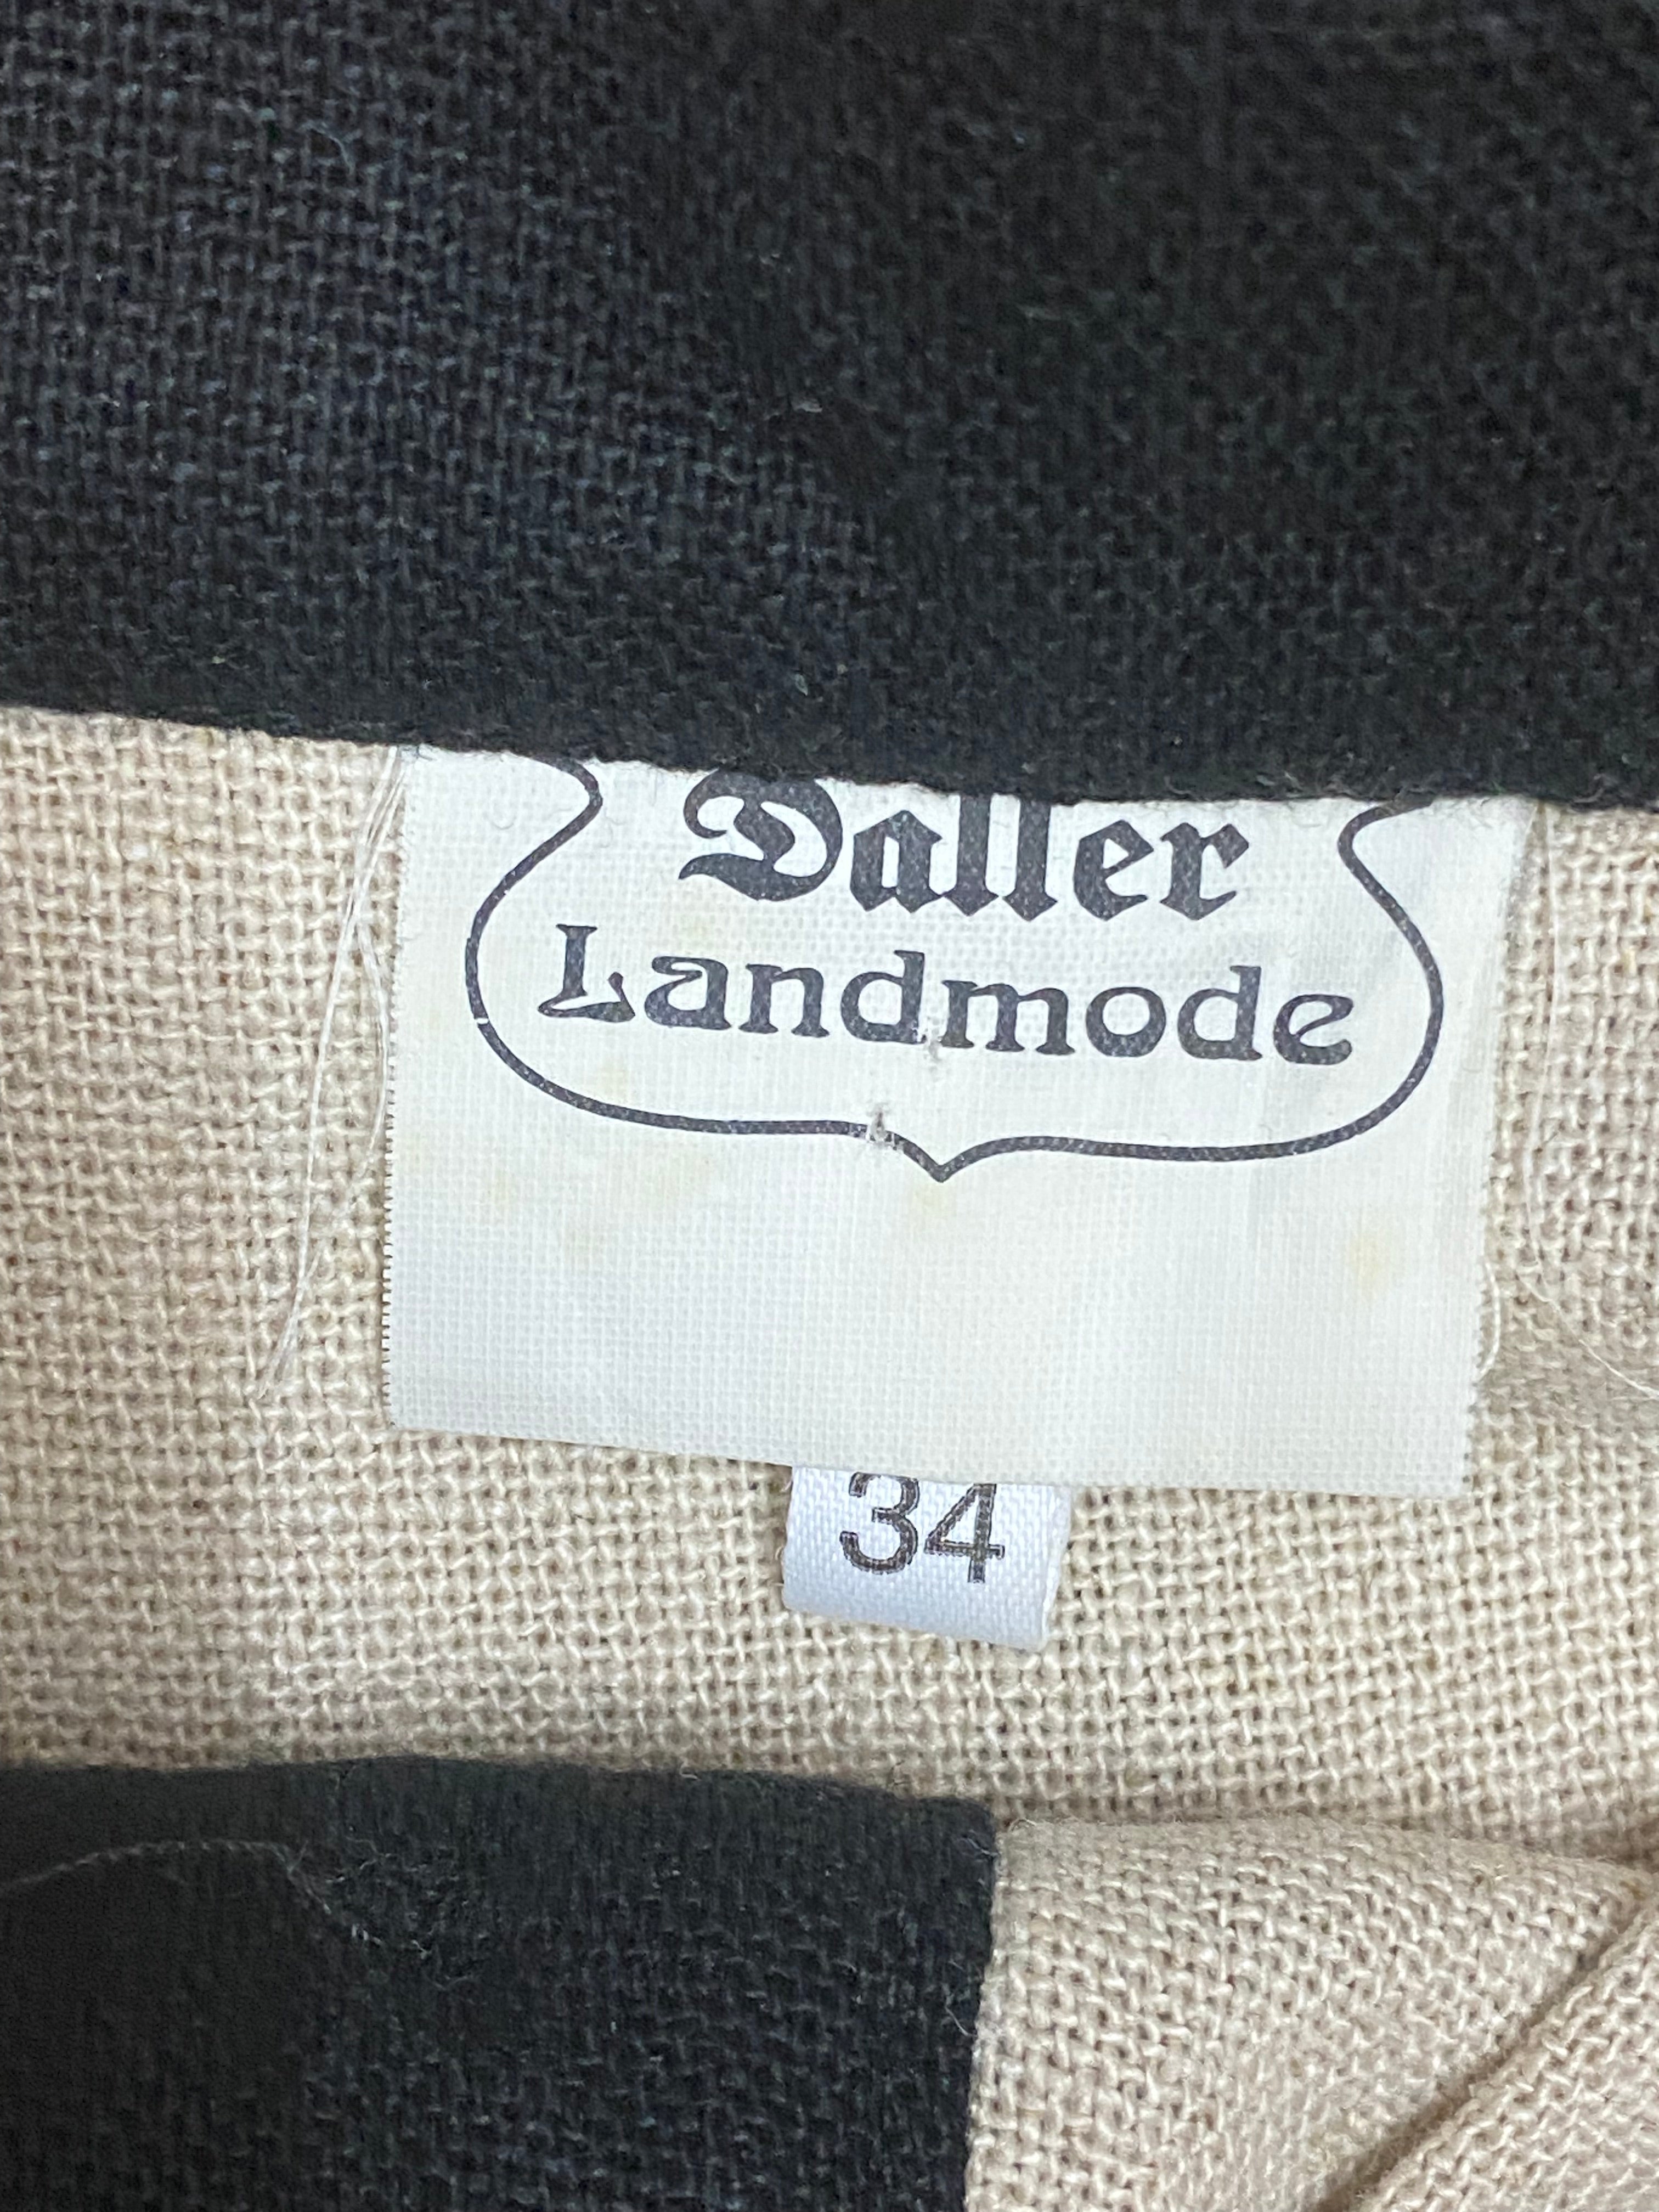 Kurzer Trachtenrock von der Marke Daller Landmode beige/schwarz Gr.34 Vintage